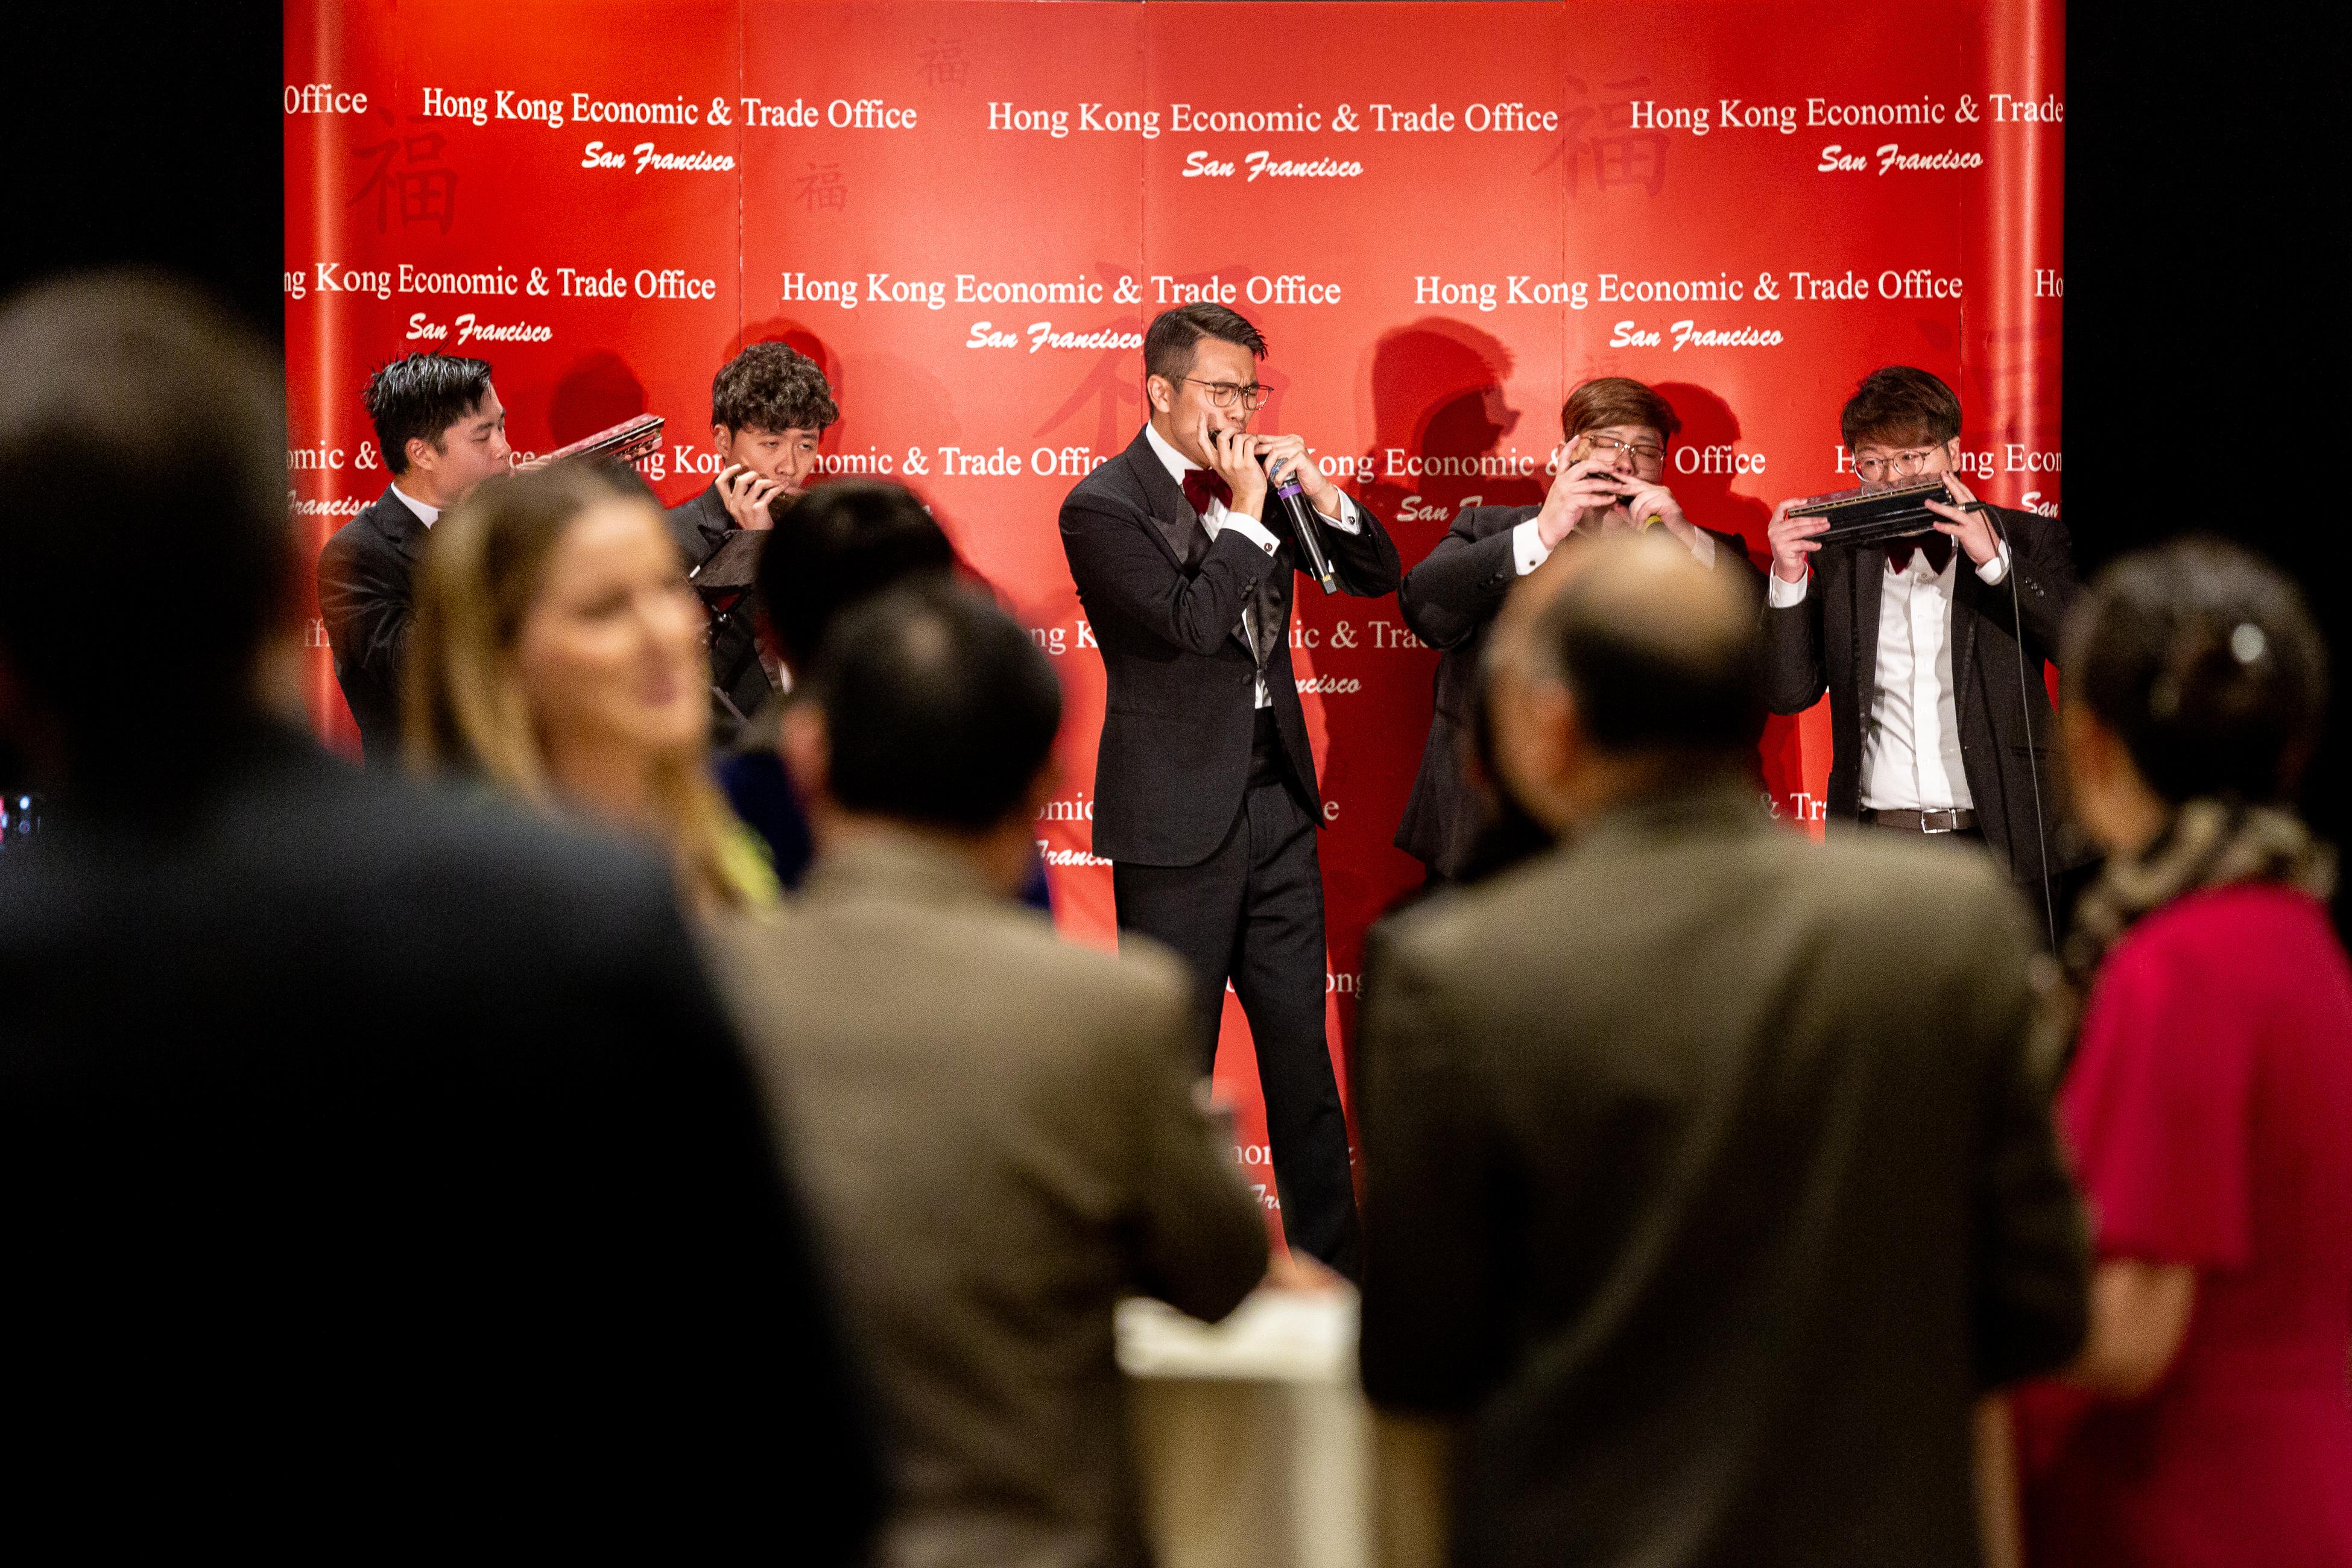 香港駐三藩市經濟貿易辦事處三月五日（西雅圖時間）在華盛頓州西雅圖舉辦新春酒會慶祝龍年。圖示香港著名口琴組合RedBricks Harmonica在酒會表演。